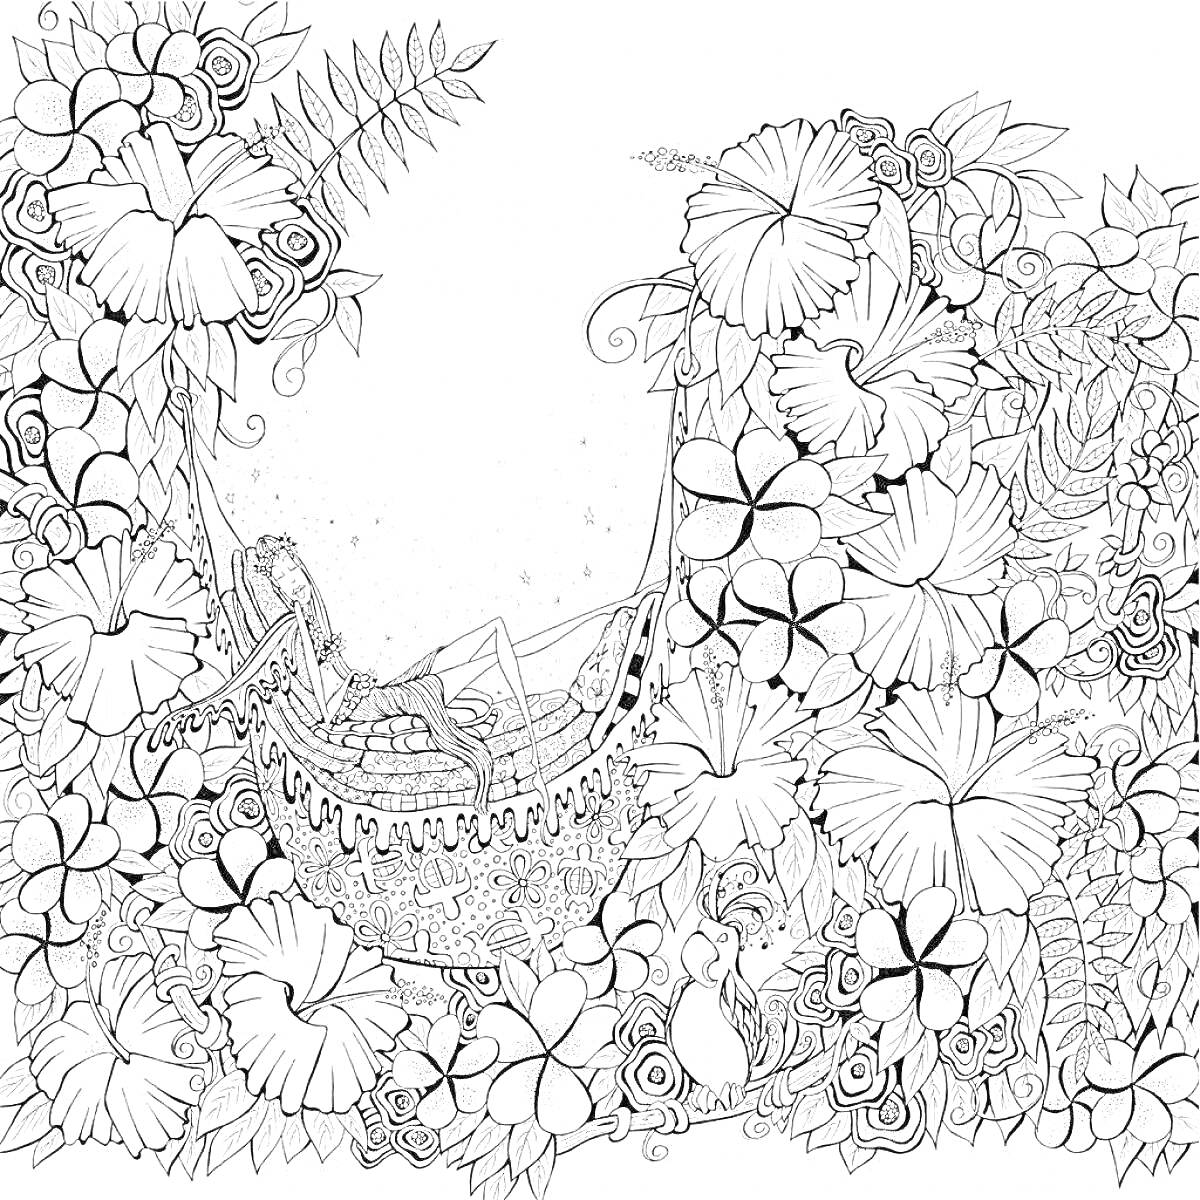 Раскраска Девушка в гамаке среди цветов, ветер уносит лепестки